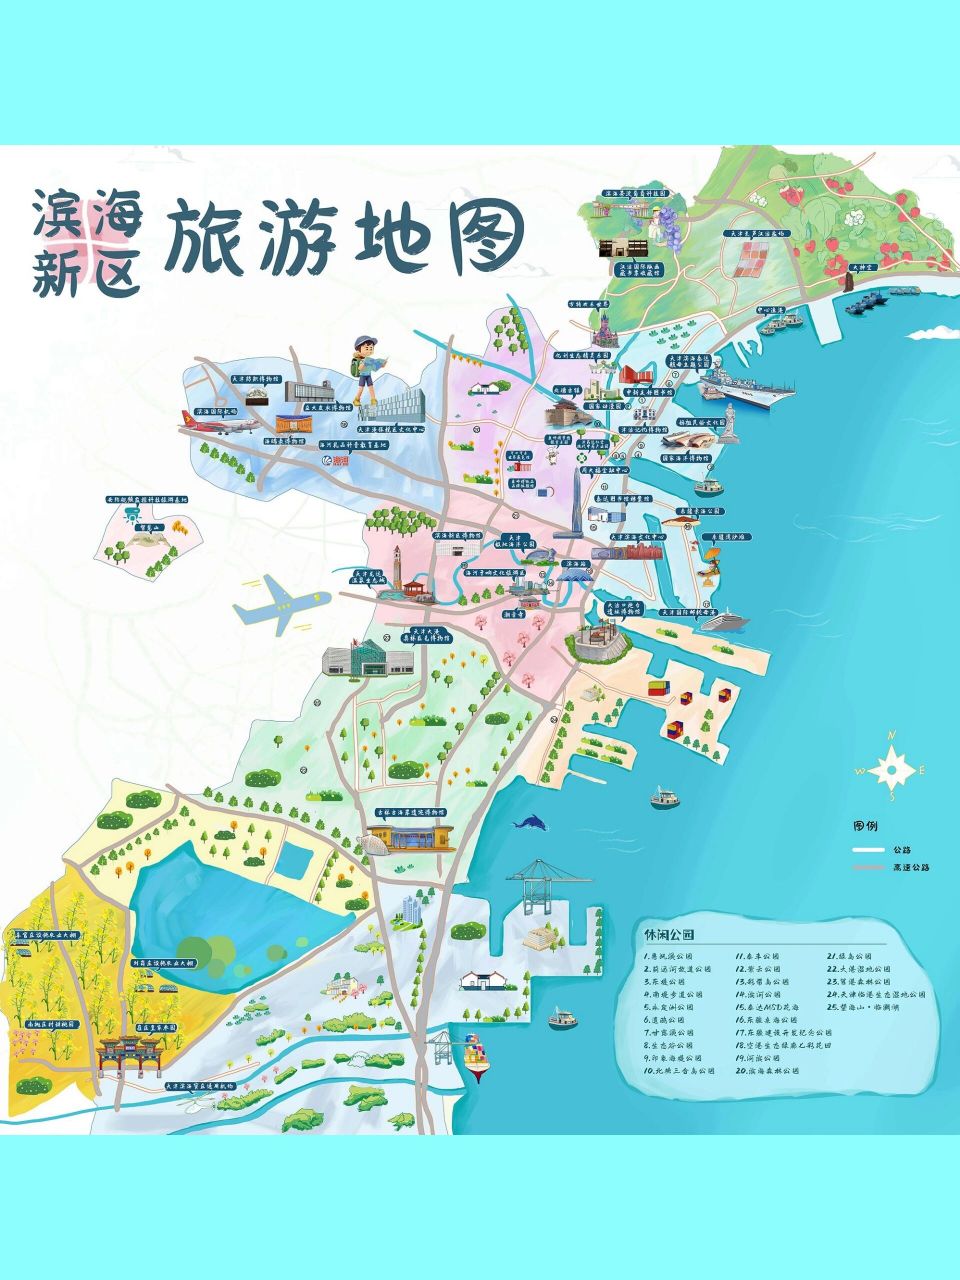 攻略自助 天津滨海旅游地图,戳地图不迷路 就是说,拿着地图去玩耍,去